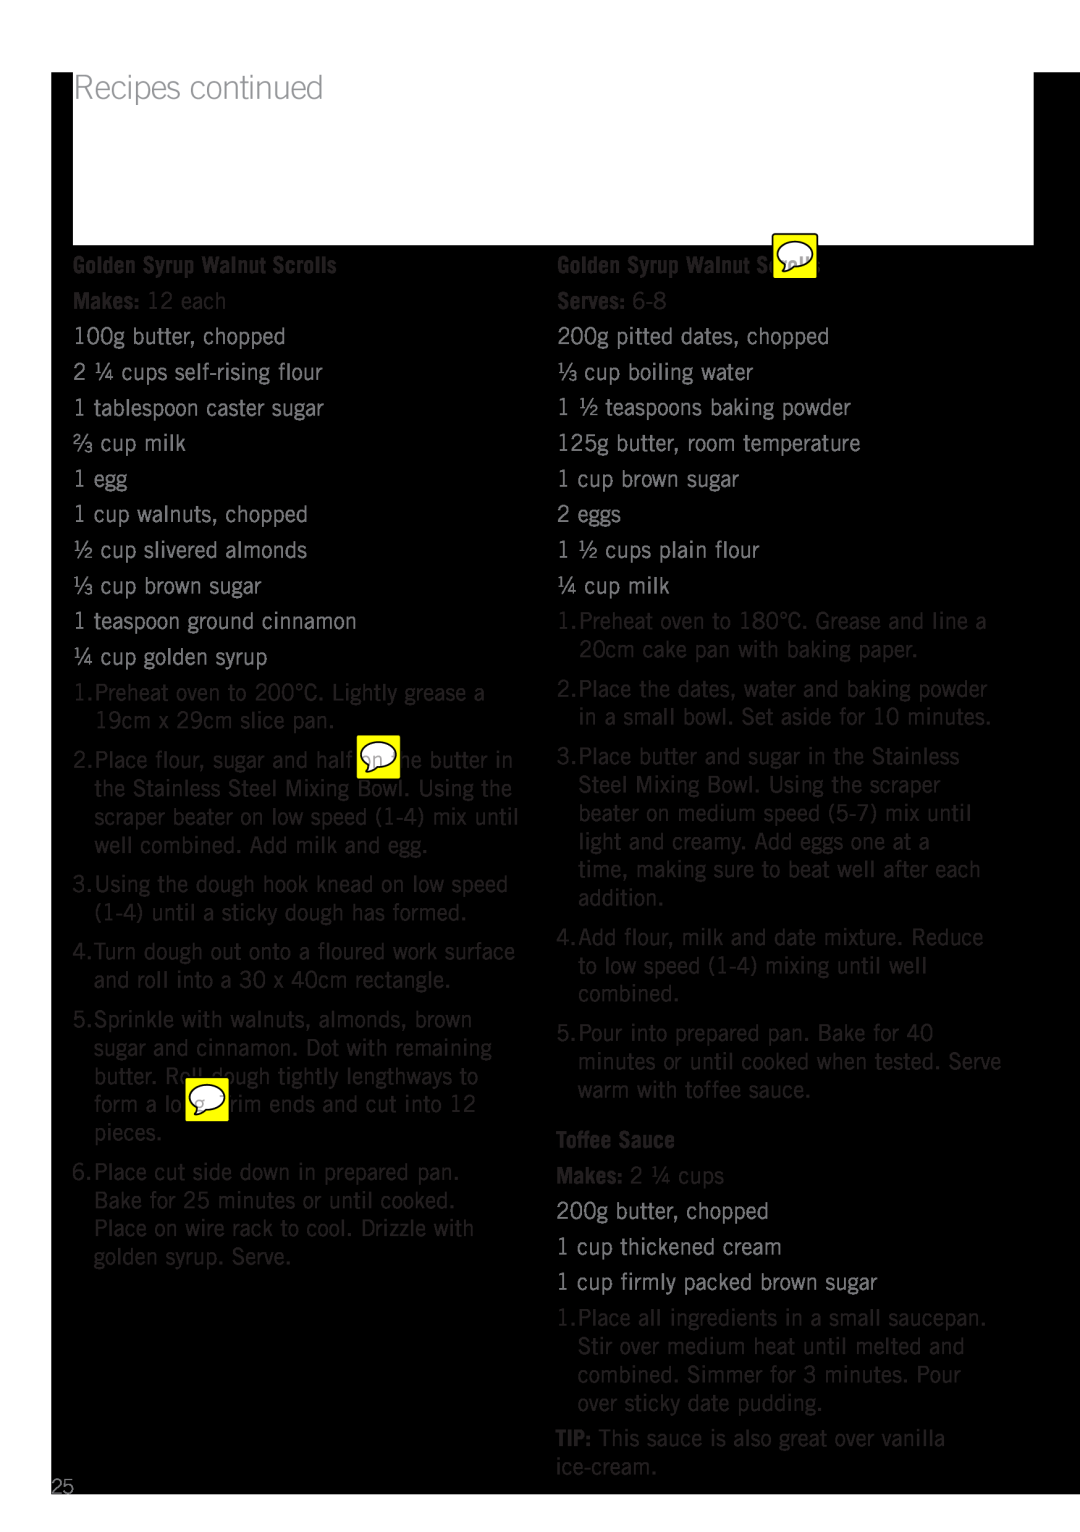 Sunbeam MX7900 Golden Syrup Walnut Scrolls Makes 12 each, 100g butter, chopped 2 ¼ cups self-rising flour, Toffee Sauce 